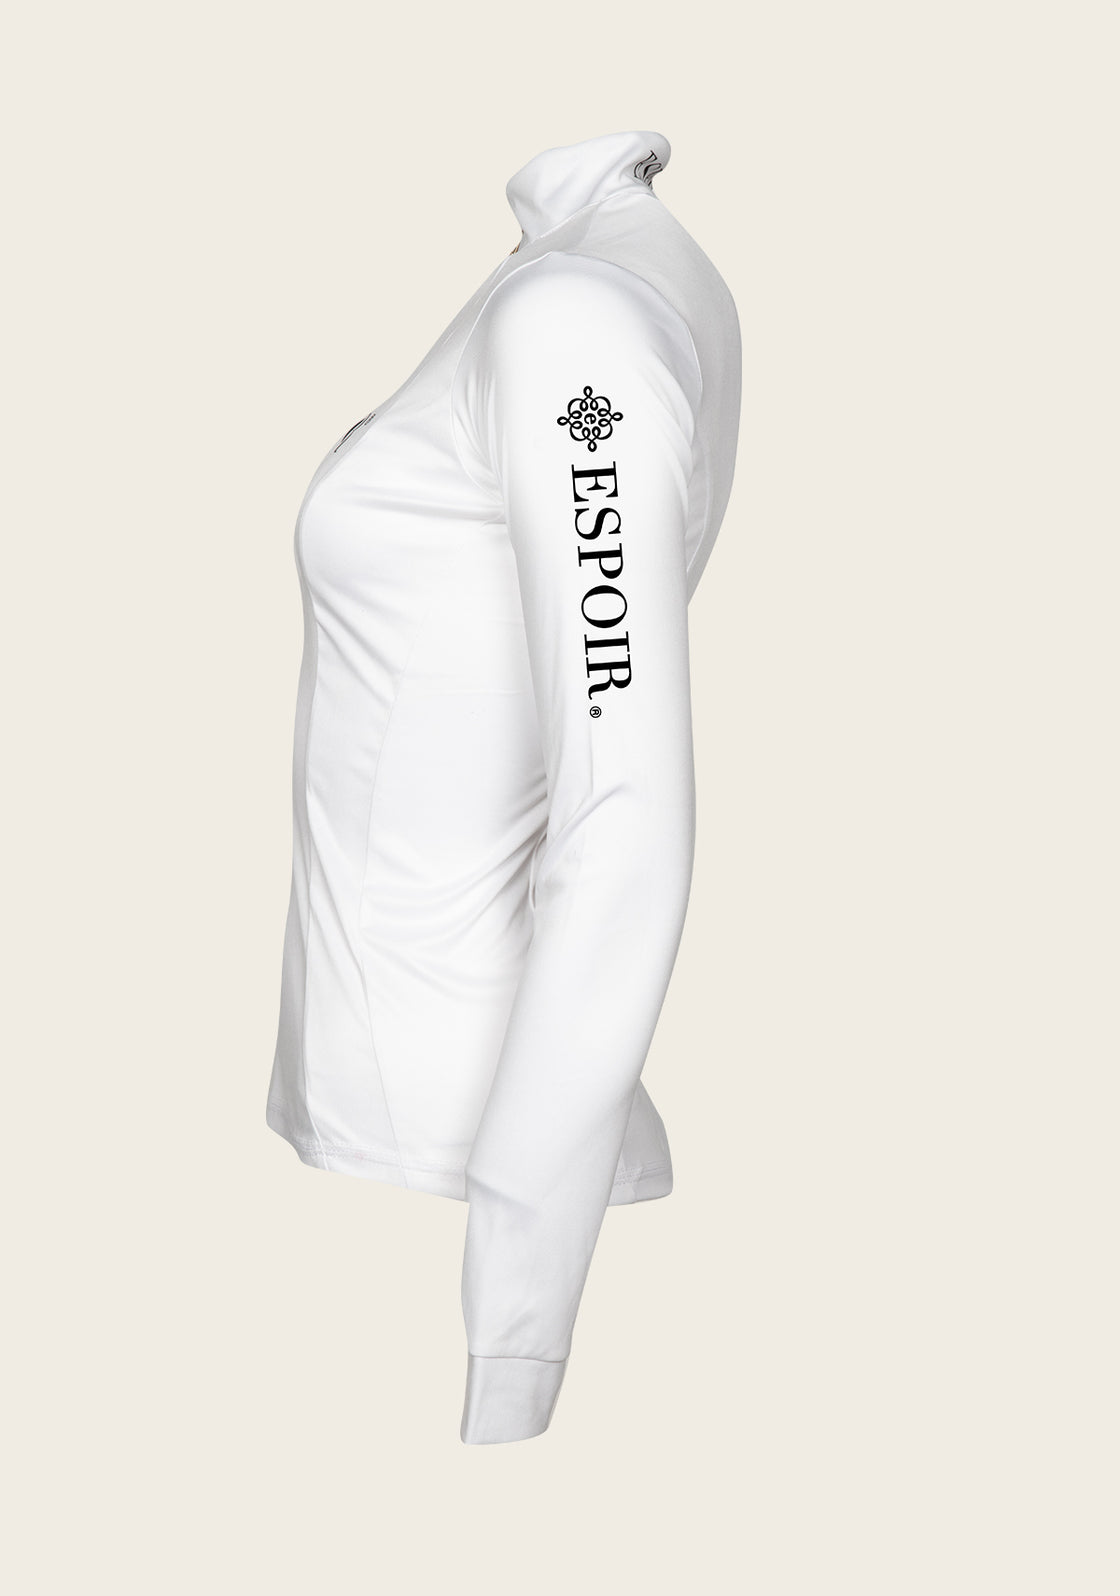 Espoir Lumiere Eternal Collection White Quarter Zip Sun Shirt